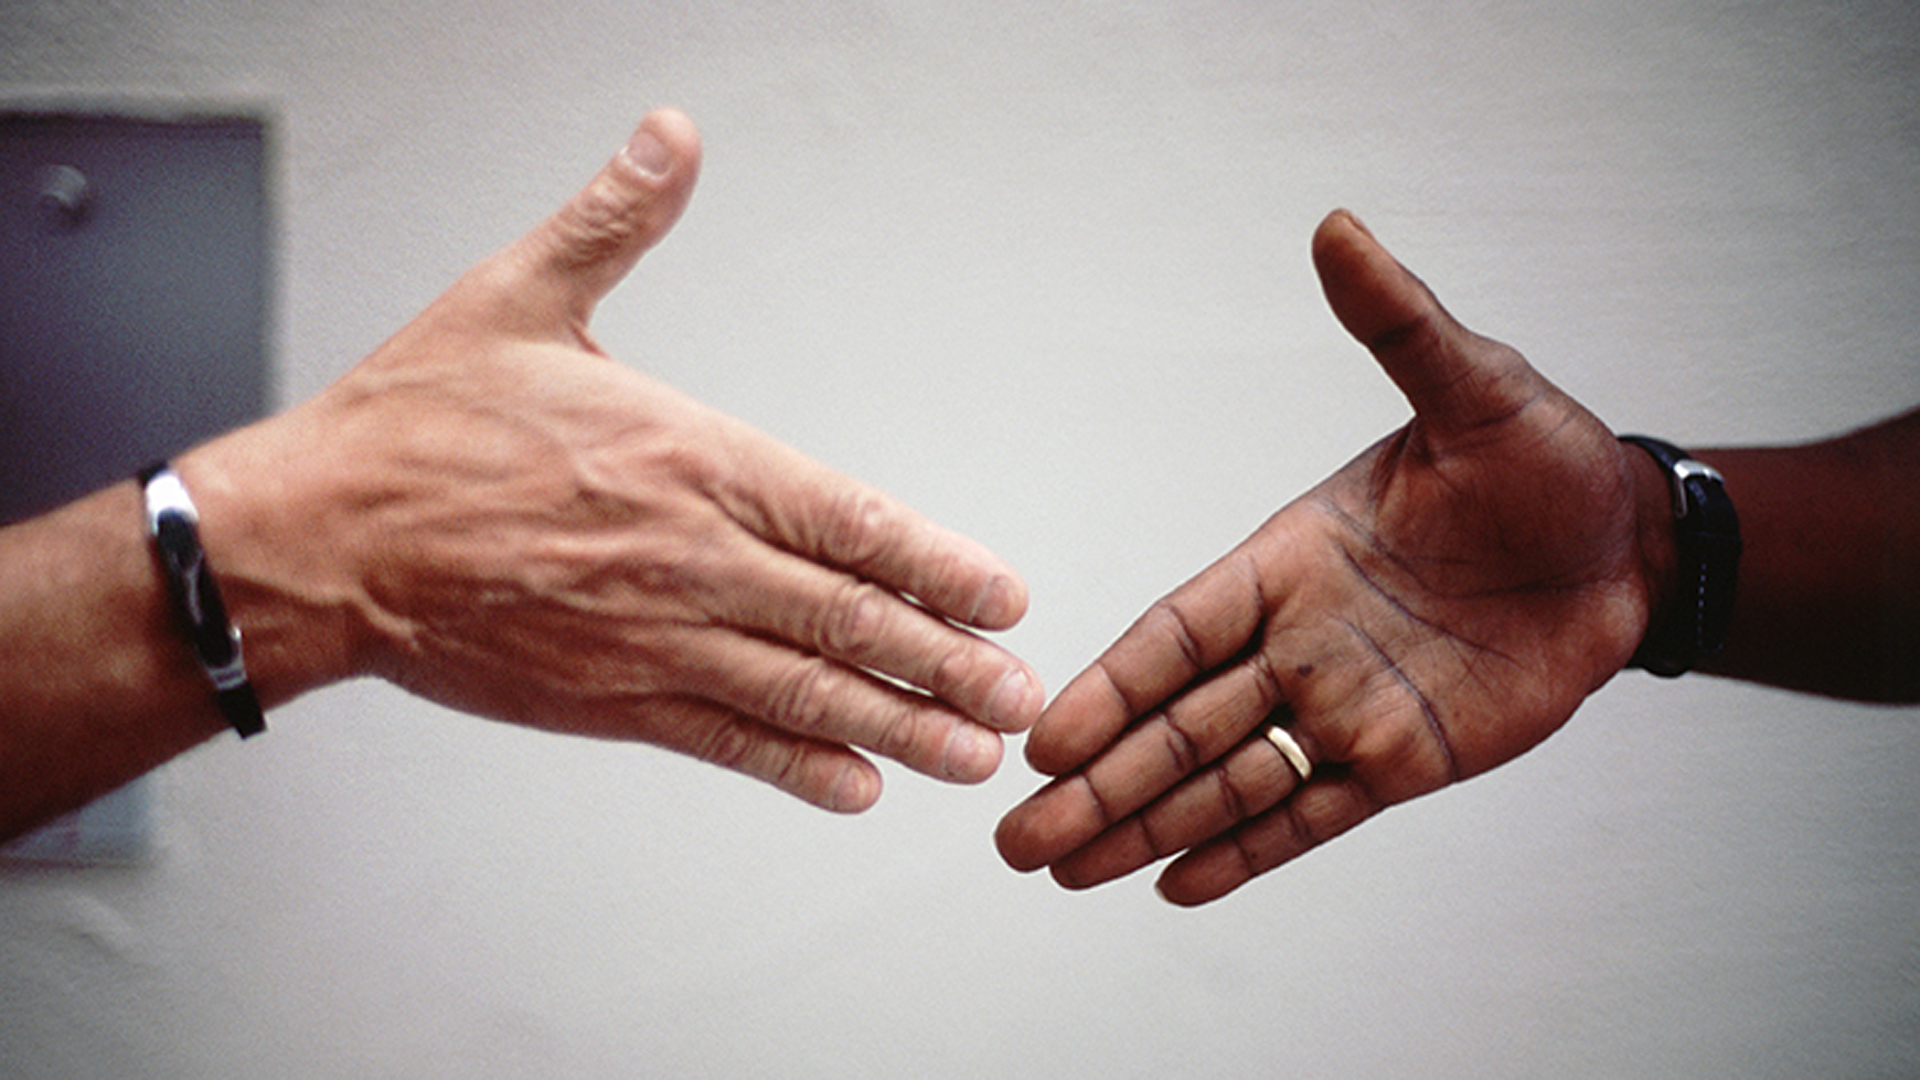 Bewegen sich aufeinander zu: weisse Hand und farbige Hand